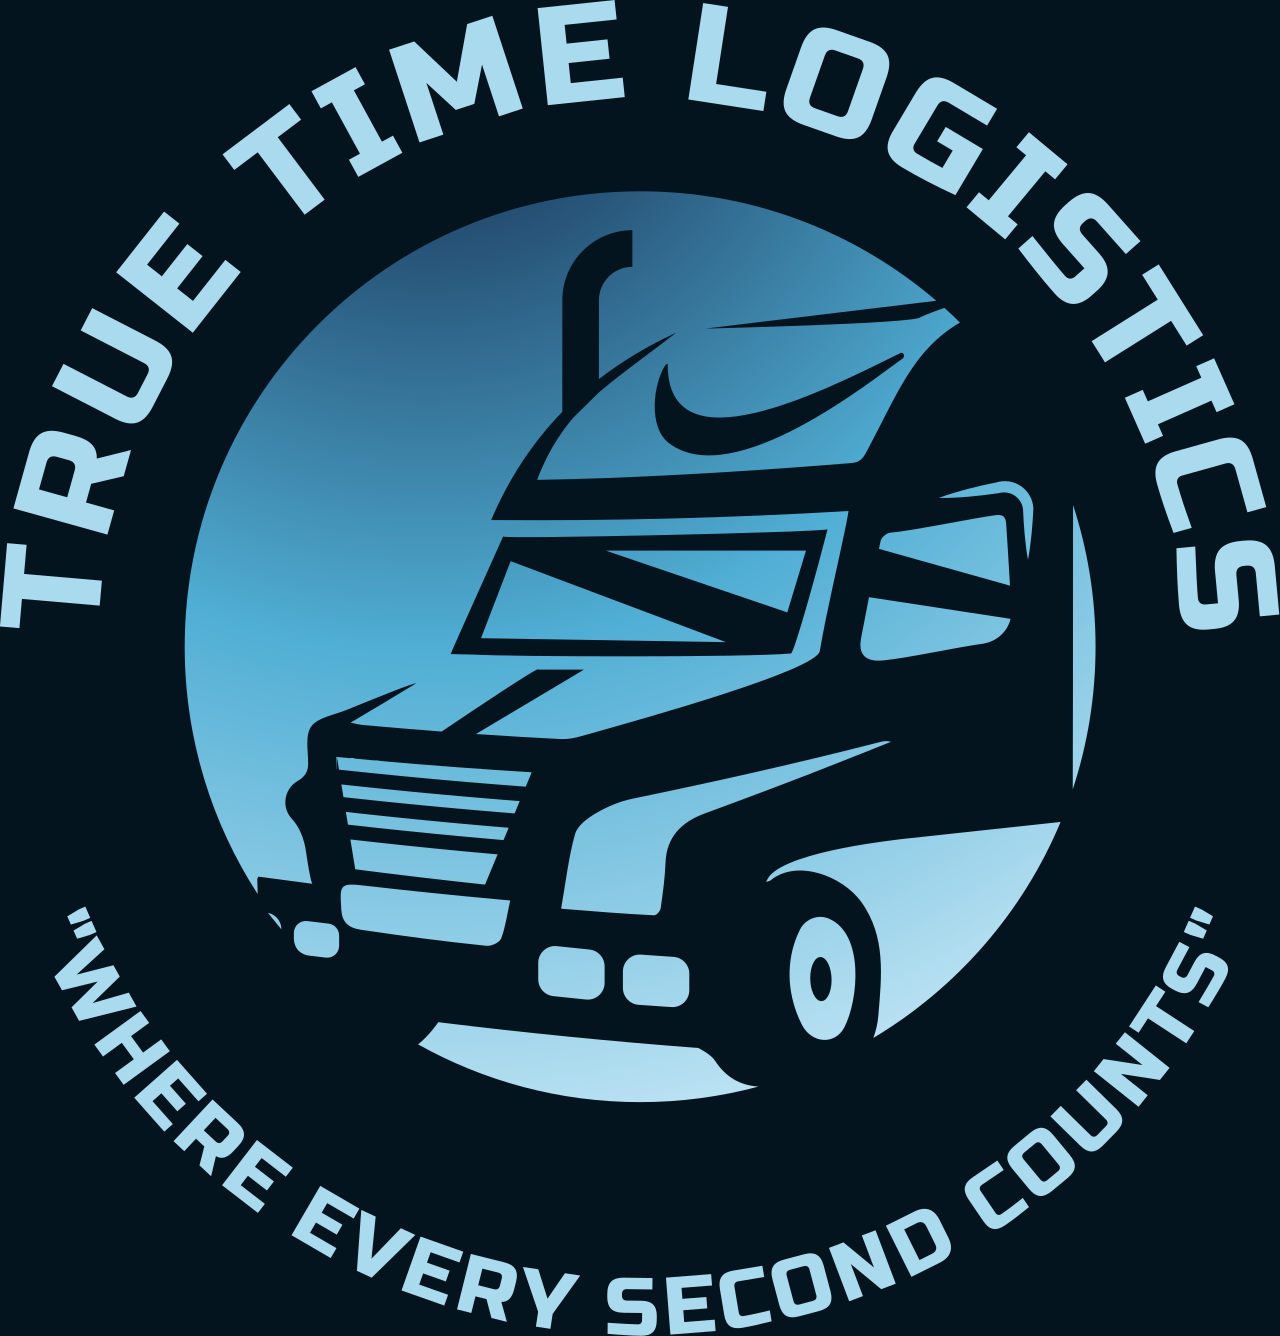 TRUE TIME LOGISTICS's logo